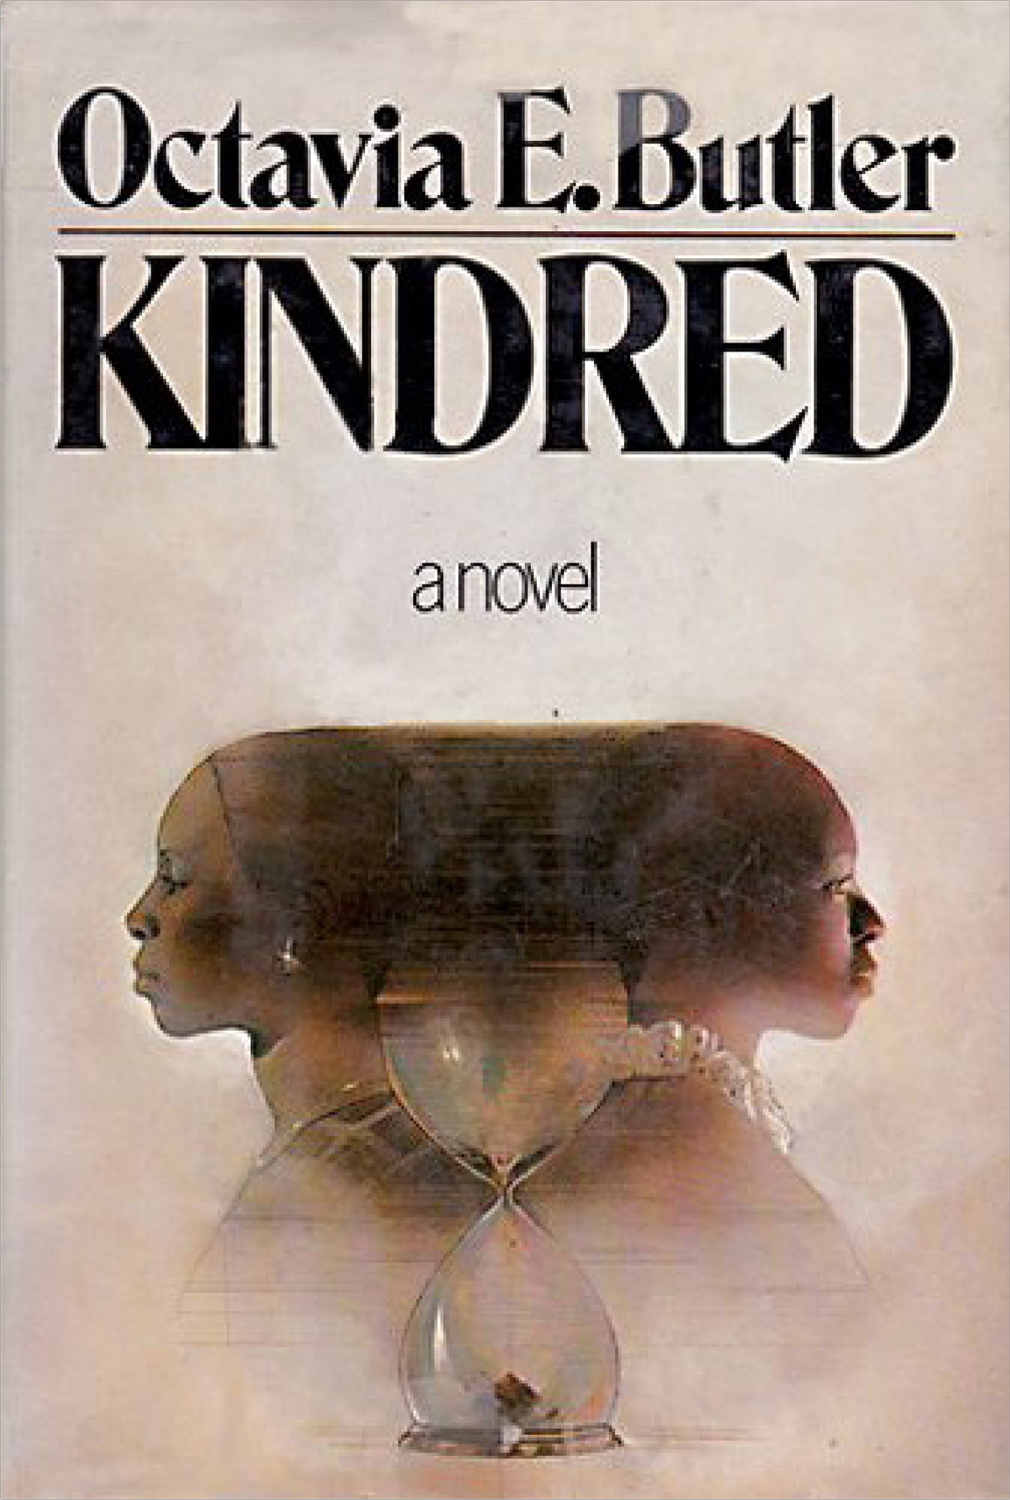 Kindred,1979, Octavia E. Butler